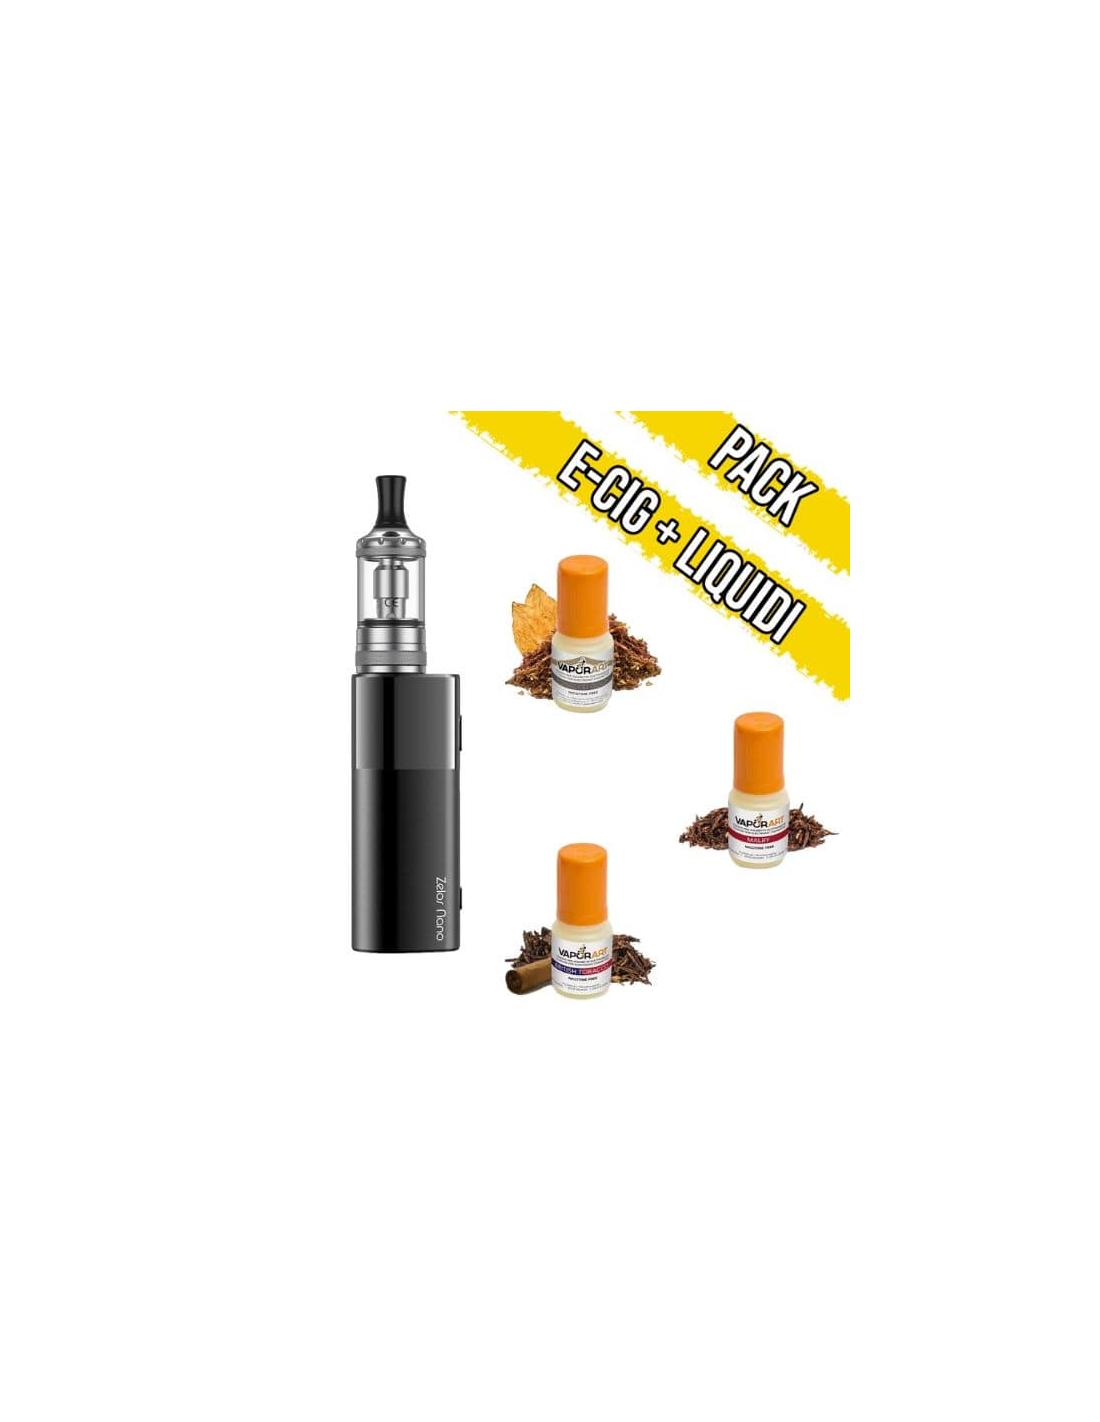 Brand Vari Aspire Zelos Nano Starter Pack Tabacco - E-Cig + 3 Liquidi Pronti 10ml Vaporart